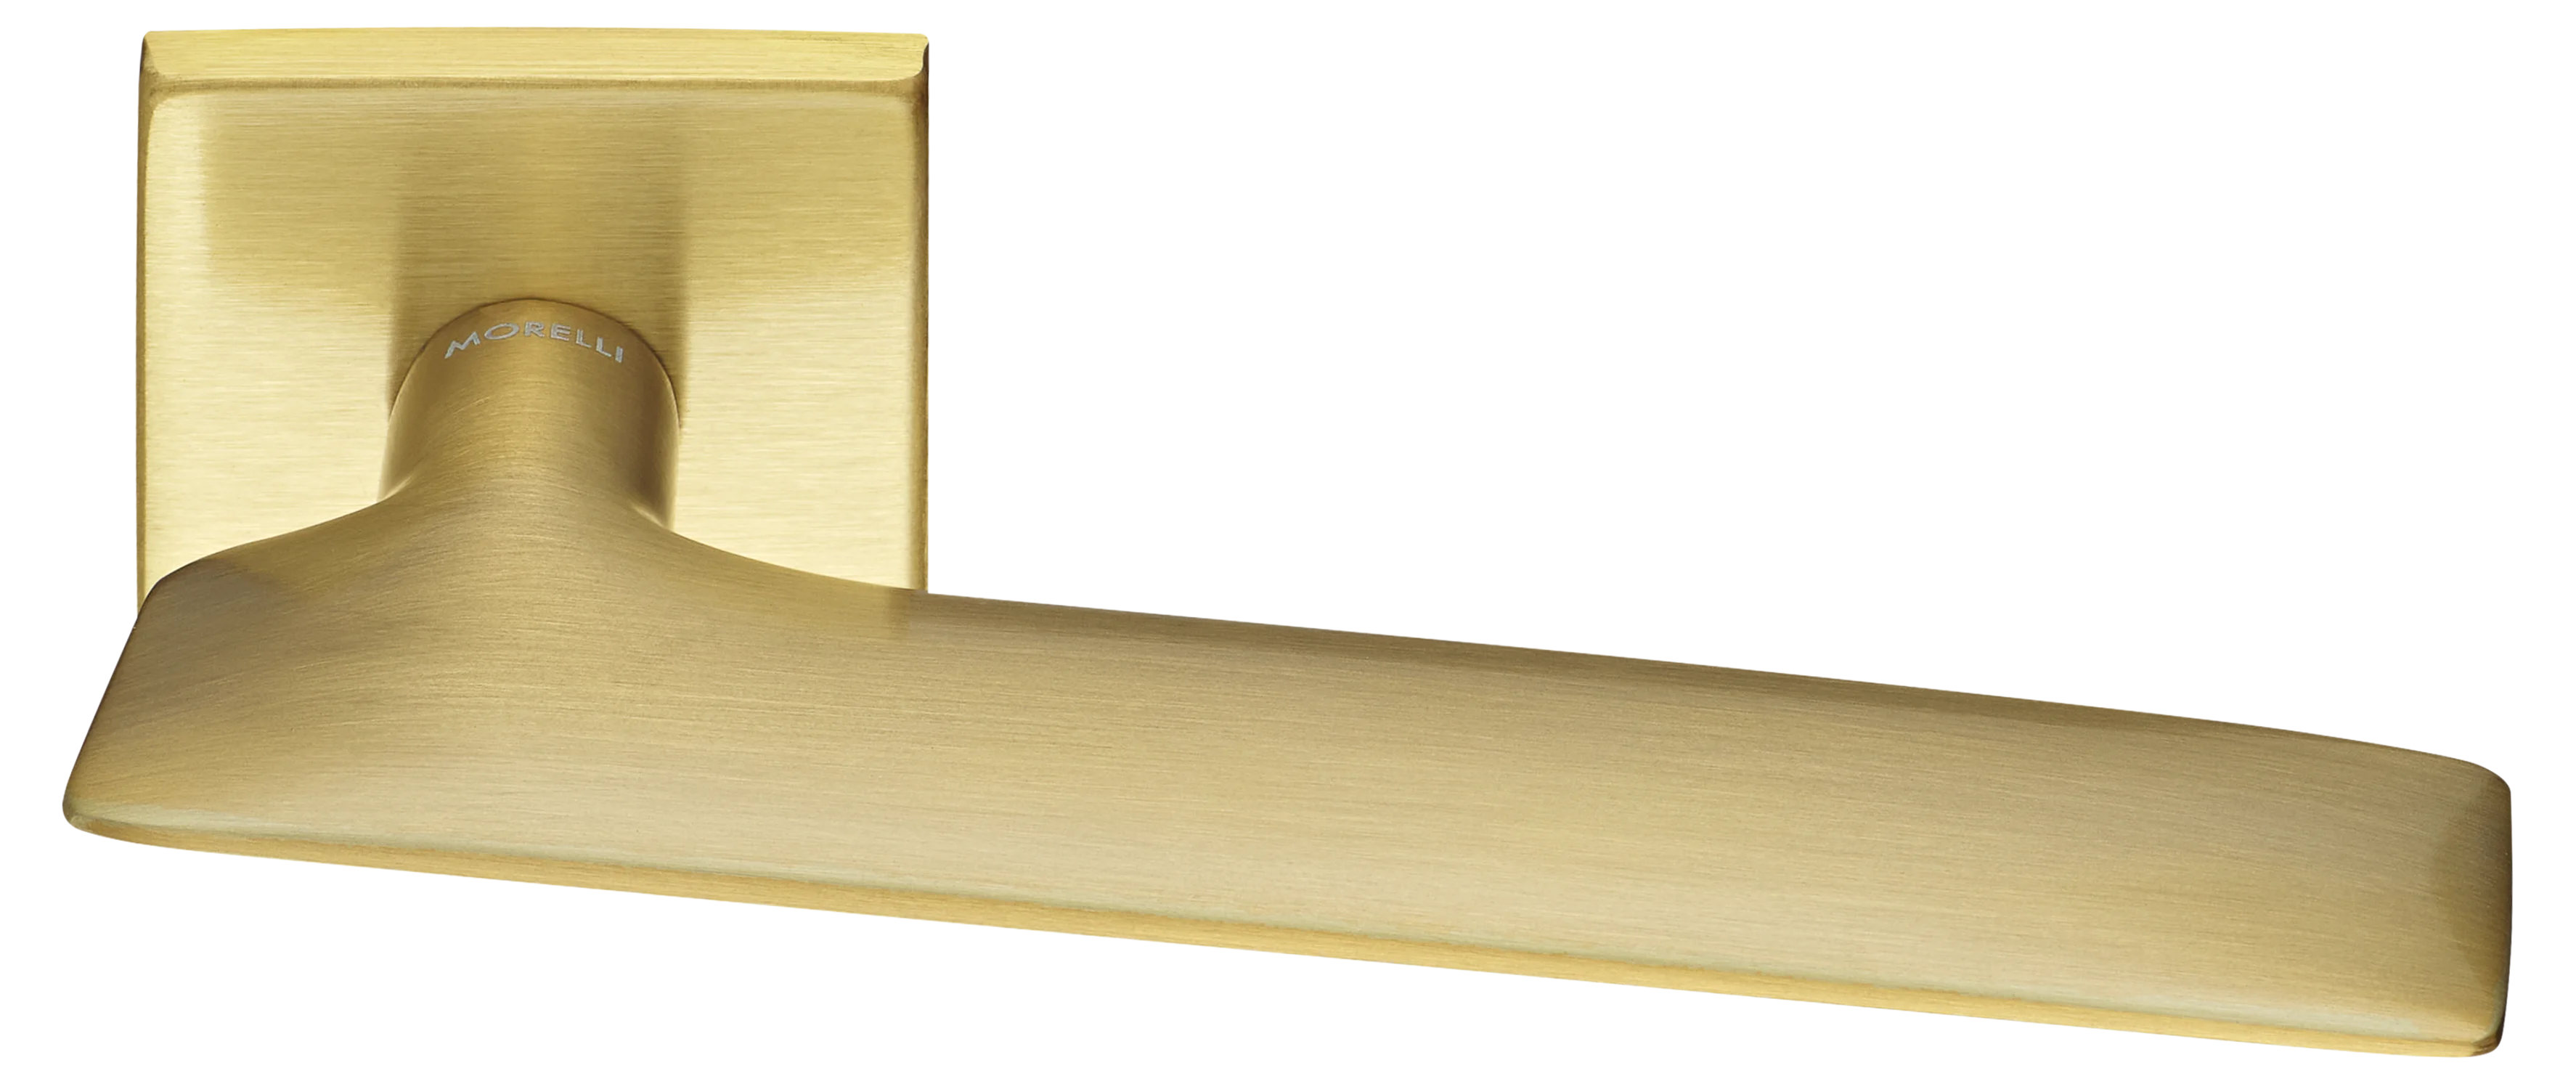 GALACTIC S5 OSA, ручка дверная, цвет -  матовое золото фото купить Актобе (Актюбинск)